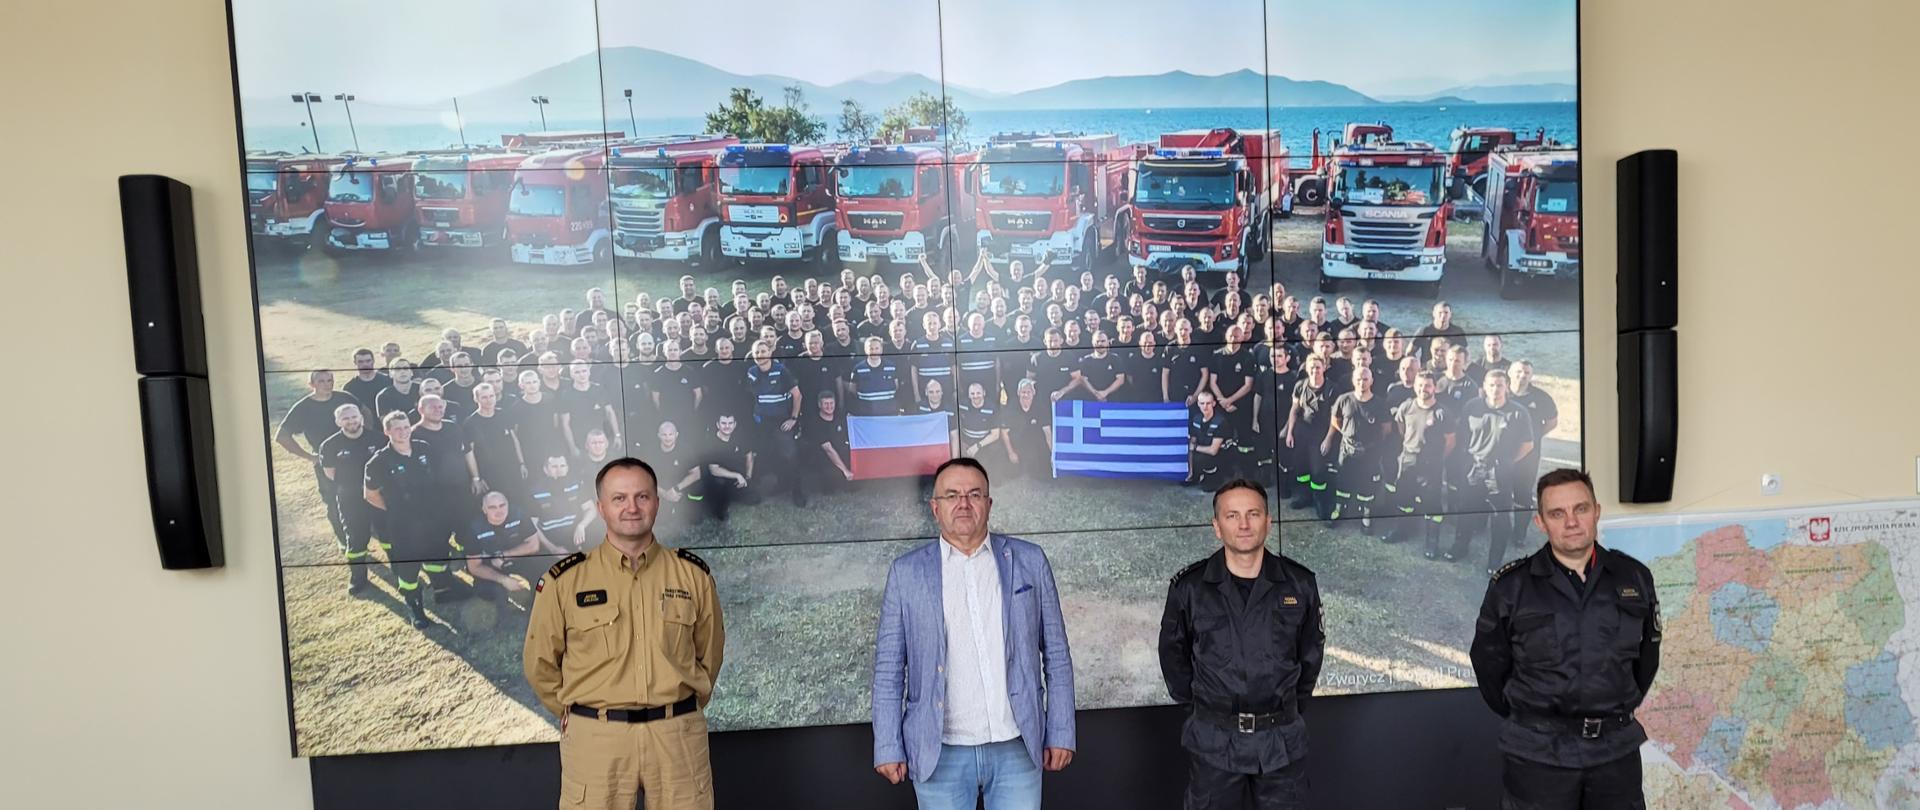 Pozują do zdjęcia (od lewej) Dyrektor KCKRiOL , Prezes Izby i dwóch zastępców dyrektora KCKRiOL. W tle wyświetlone zdjęcie polskich strażaków w Grecji